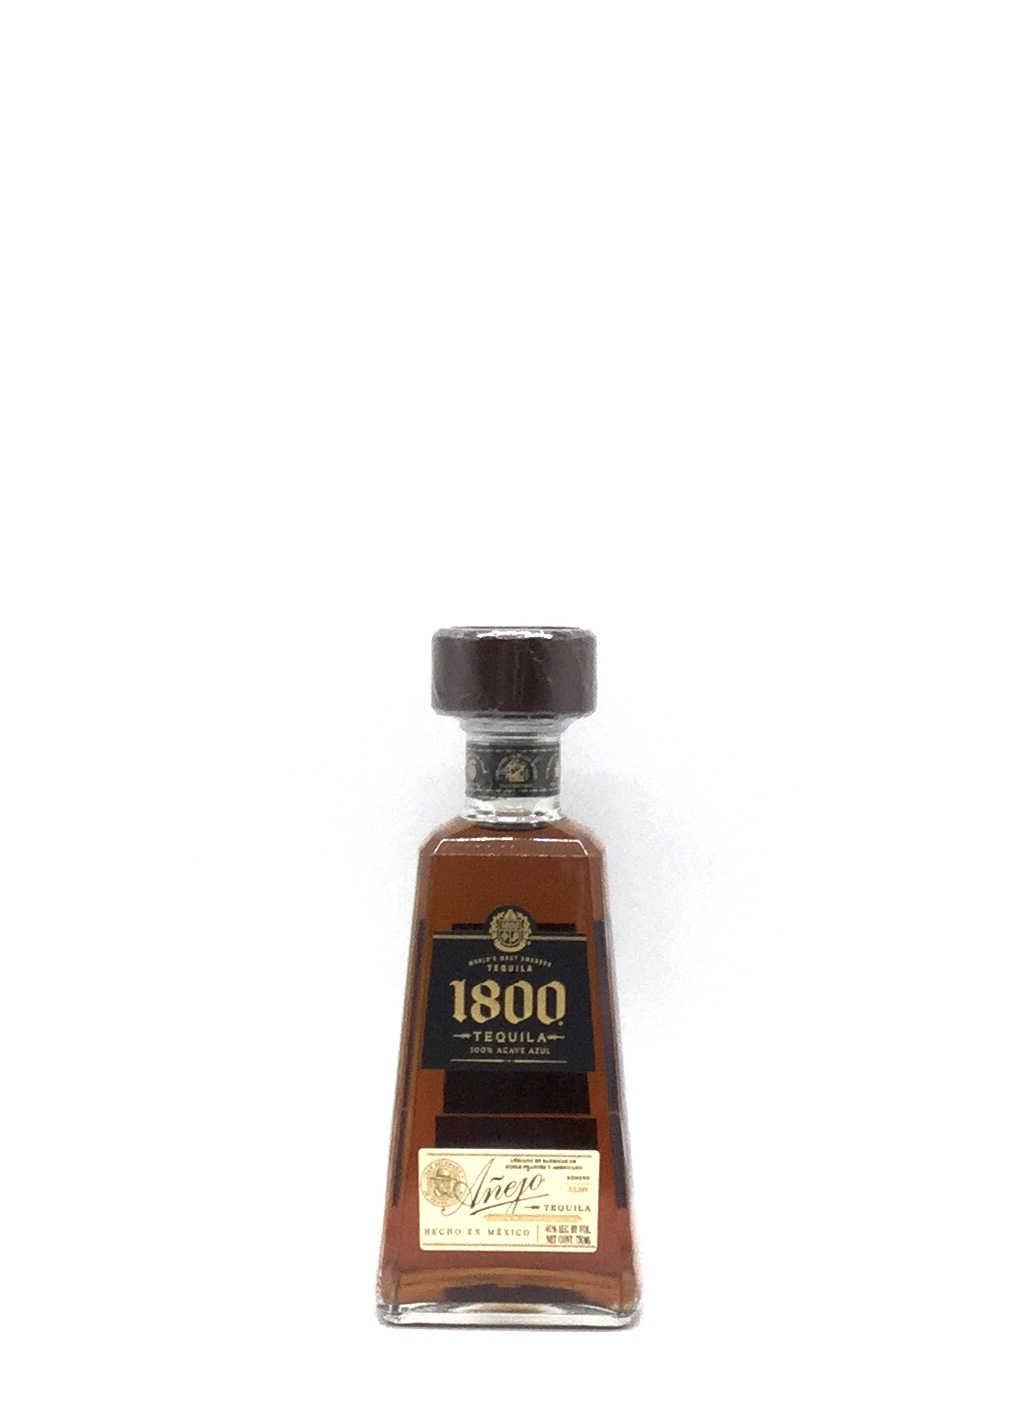 スピリッツ メキシコ産 1800 アネホ - ウイスキー